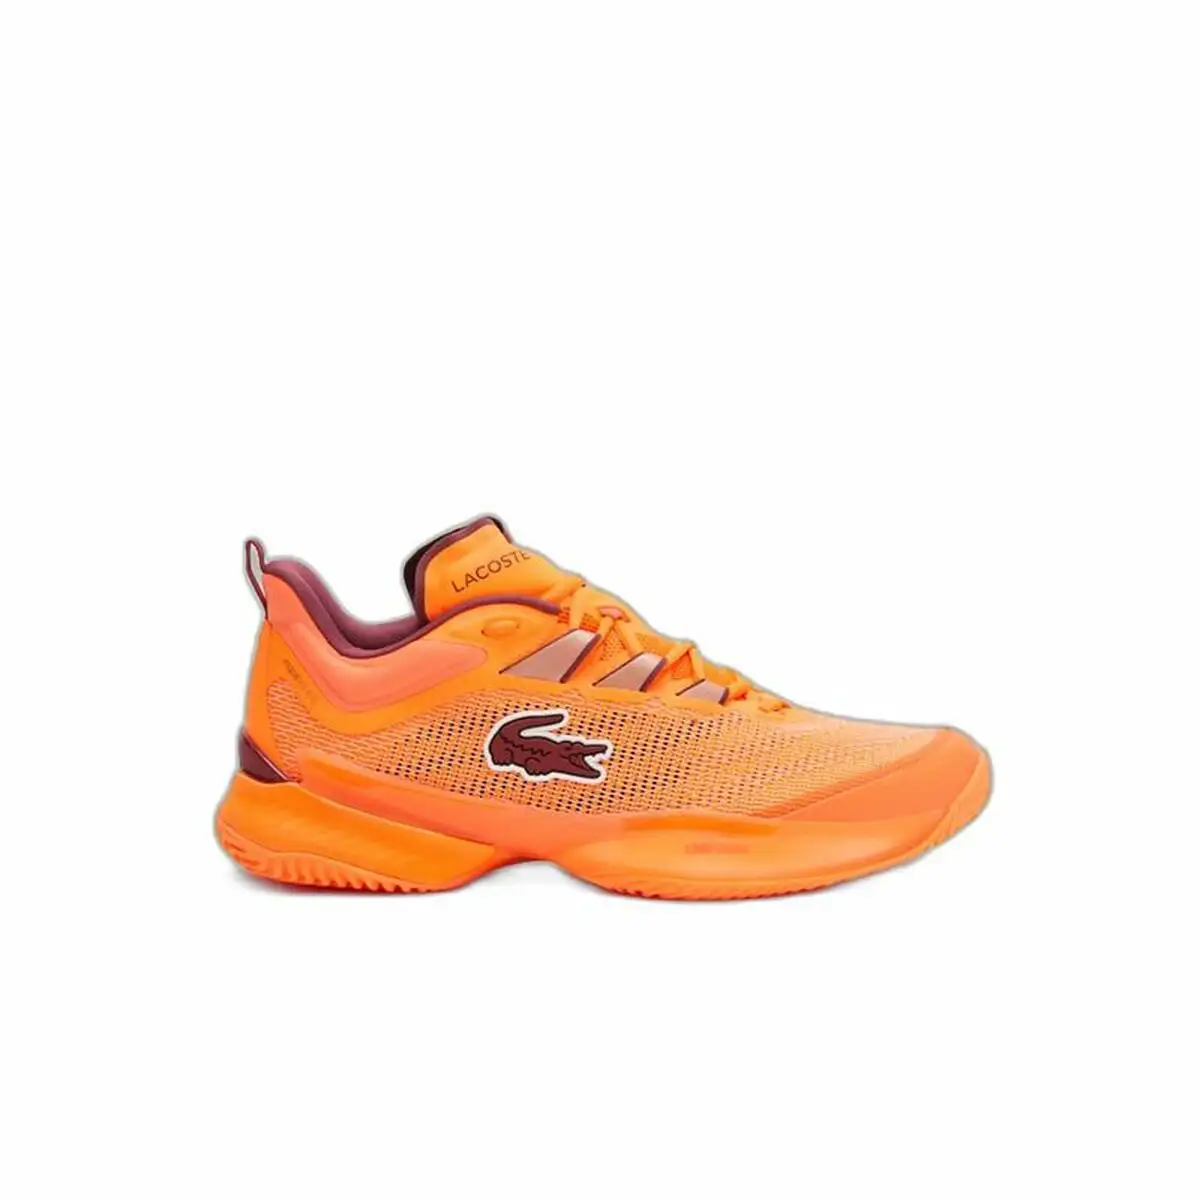 Chaussures casual homme lacoste ultra cc orange_4162. DIAYTAR SENEGAL - Votre Destination pour un Shopping Inégalé. Naviguez à travers notre sélection minutieuse pour trouver des produits qui répondent à tous vos besoins.